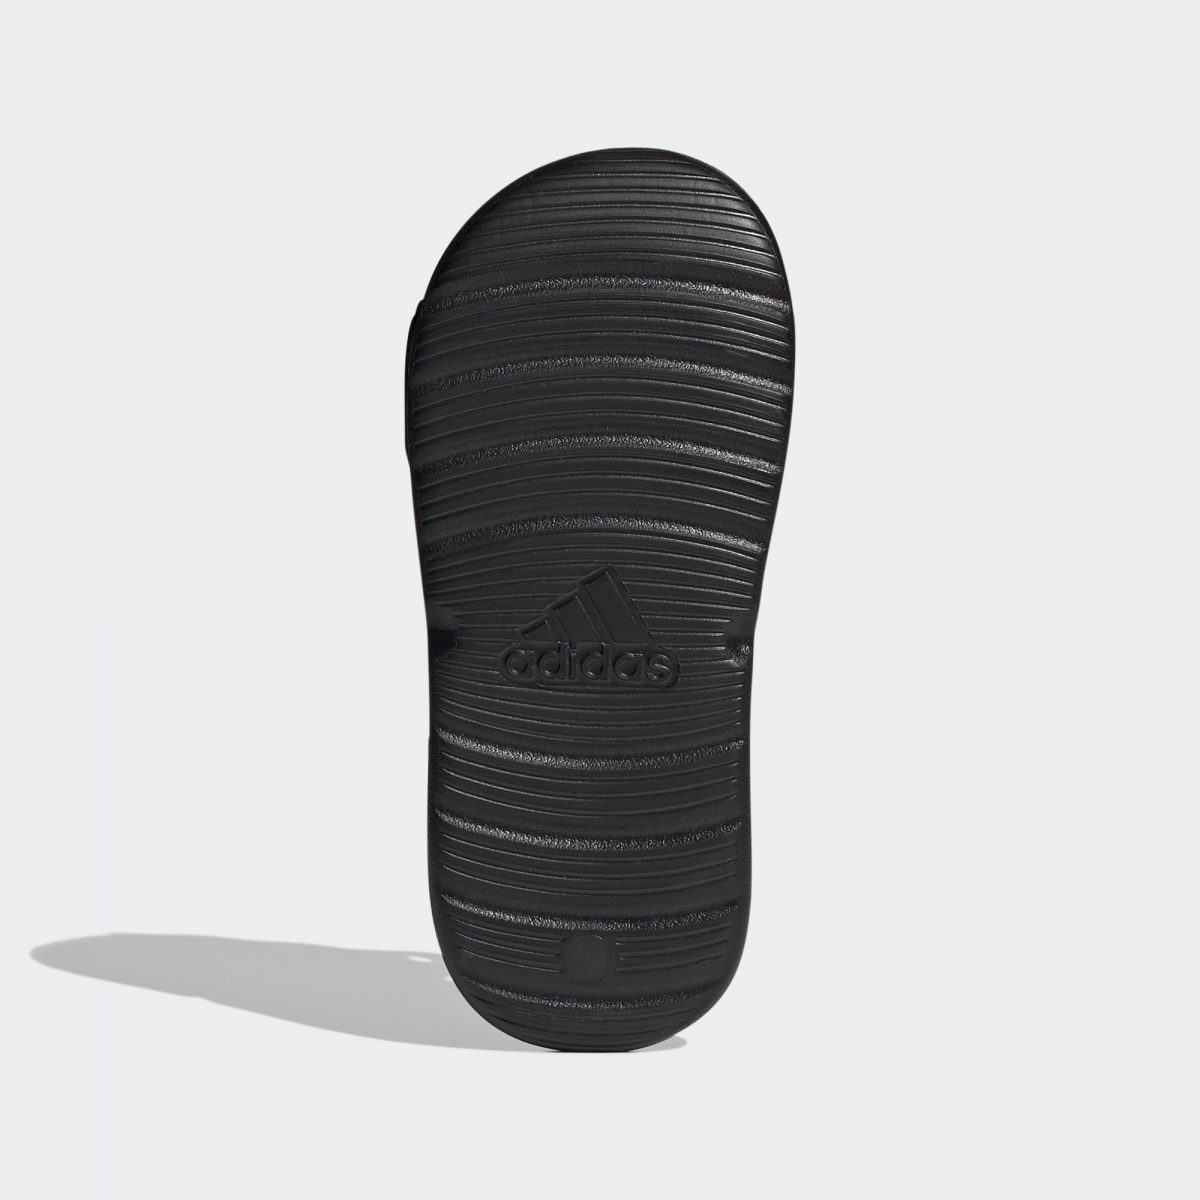 Детские сандалии adidas SWIM SANDALS